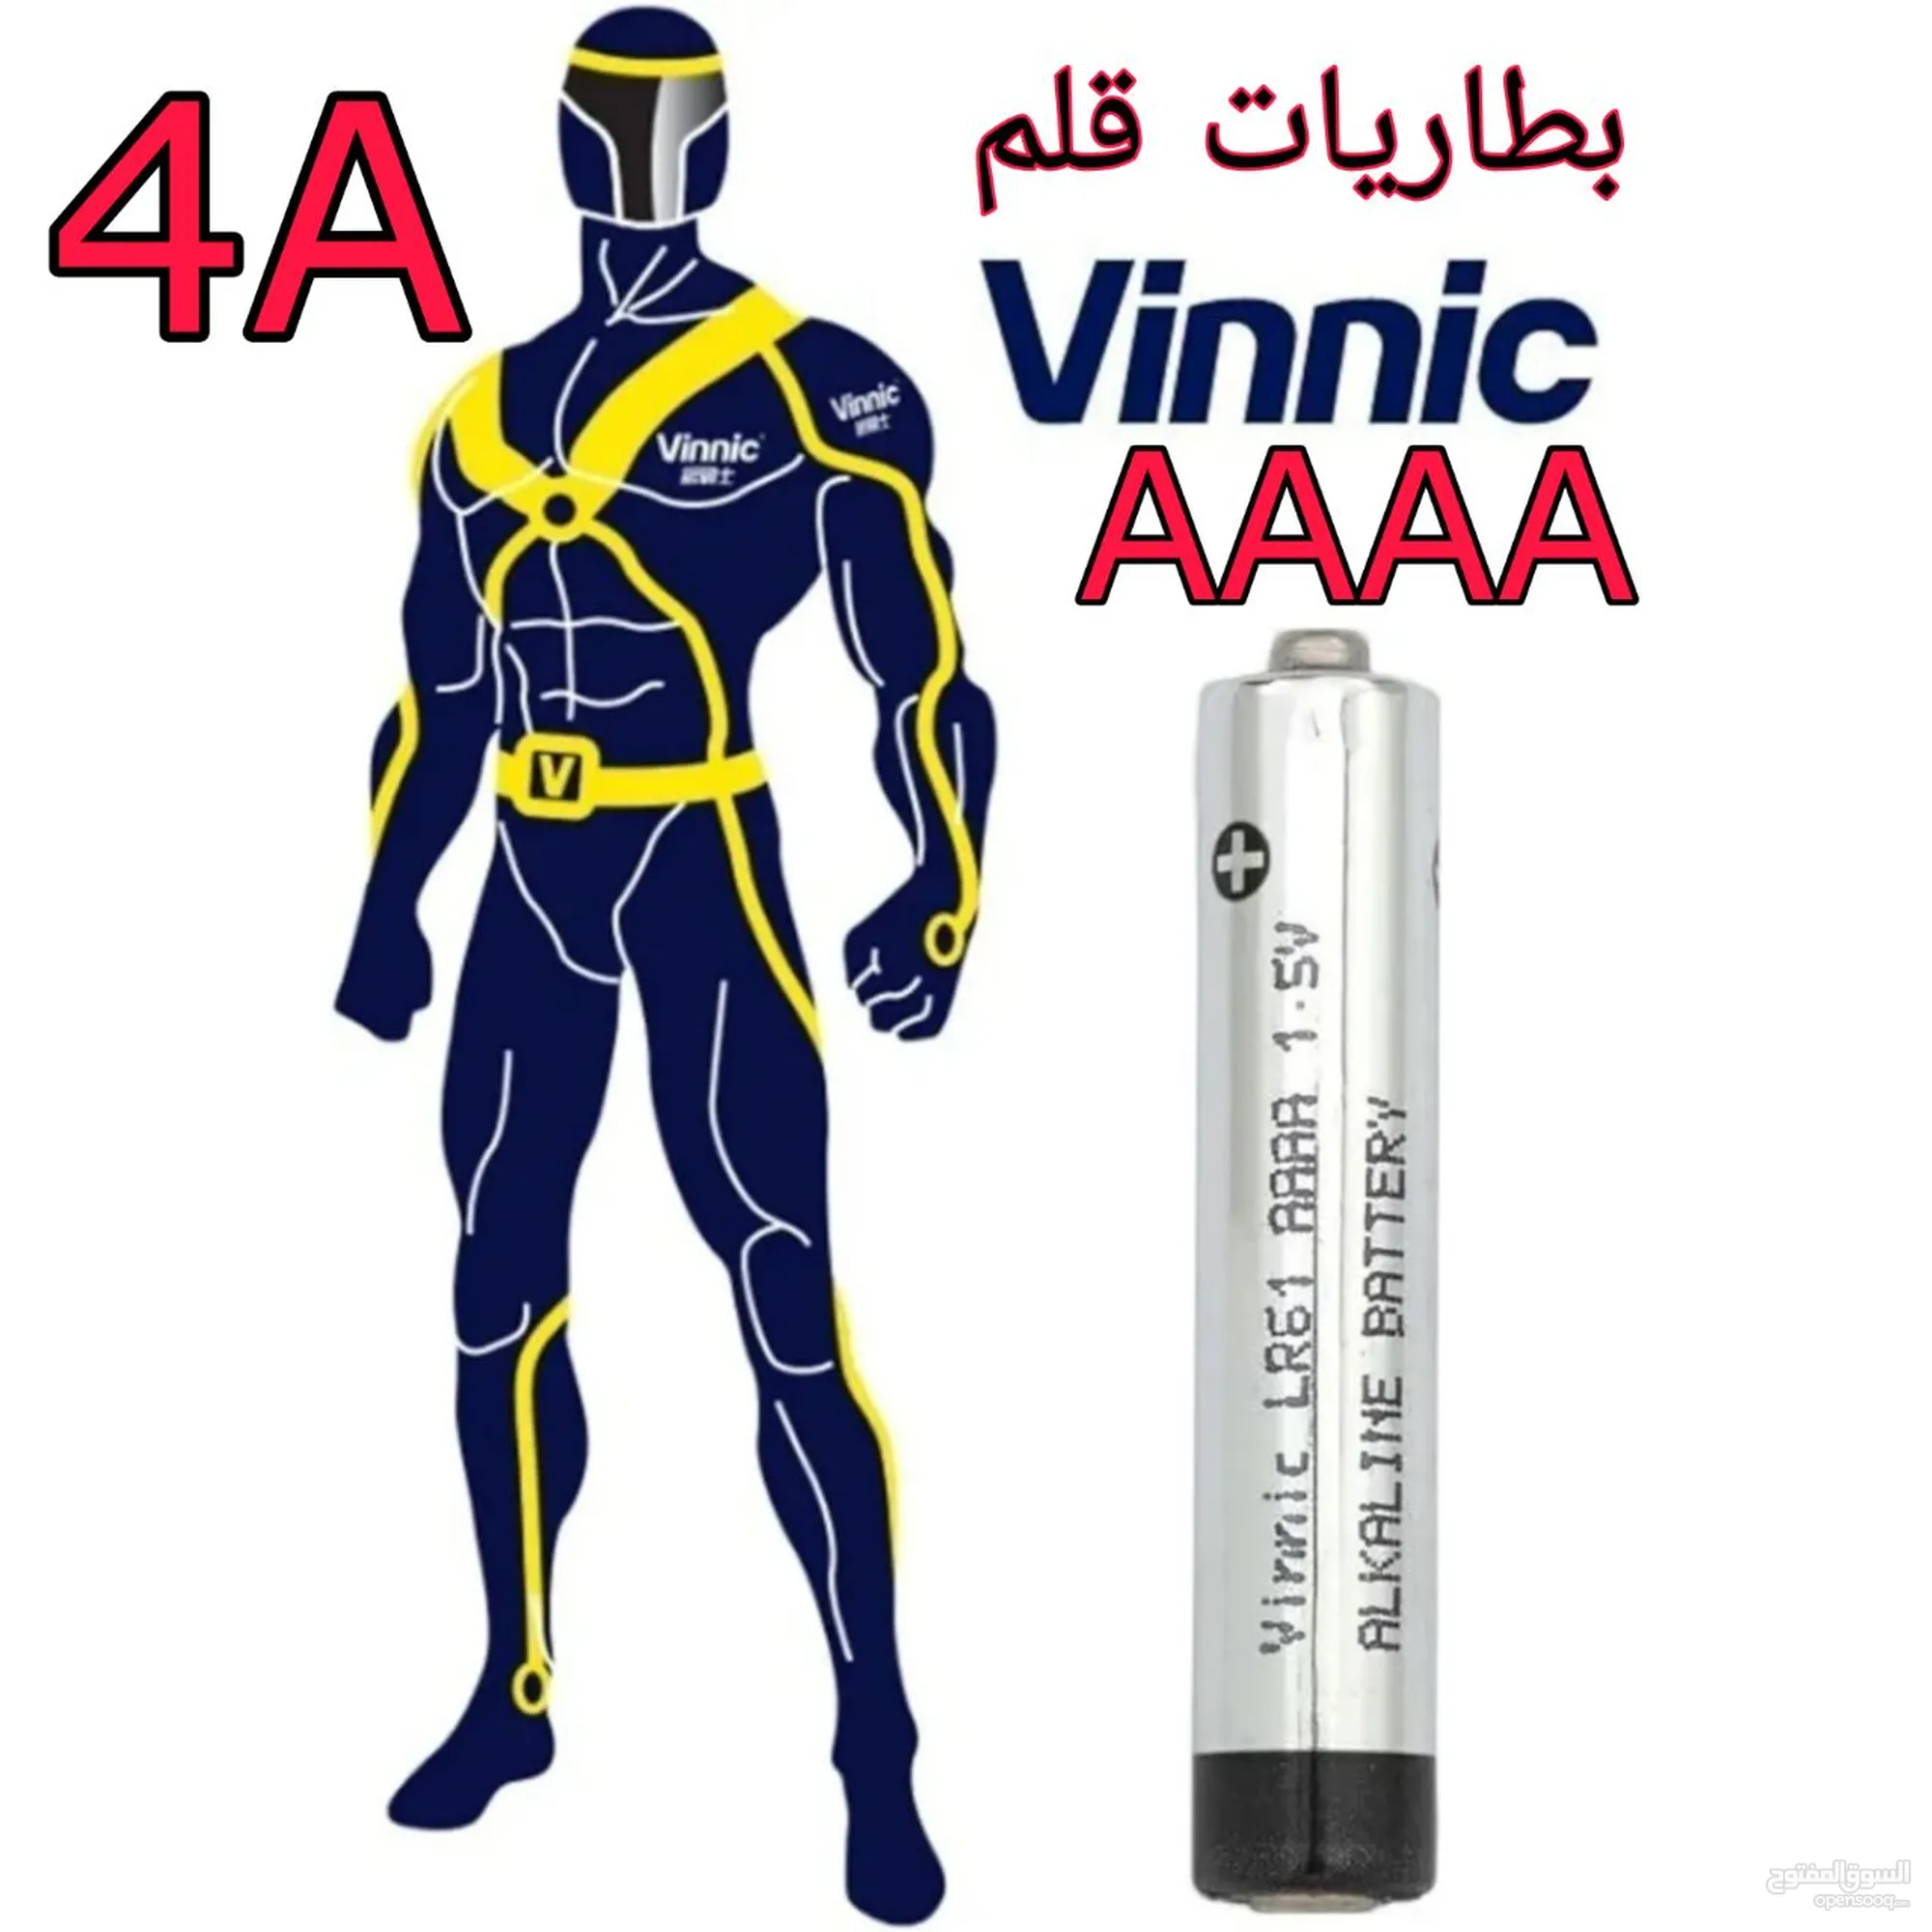 بطارية قلم AAAA نوع فينيك الكالاين - (236998476) | السوق المفتوح